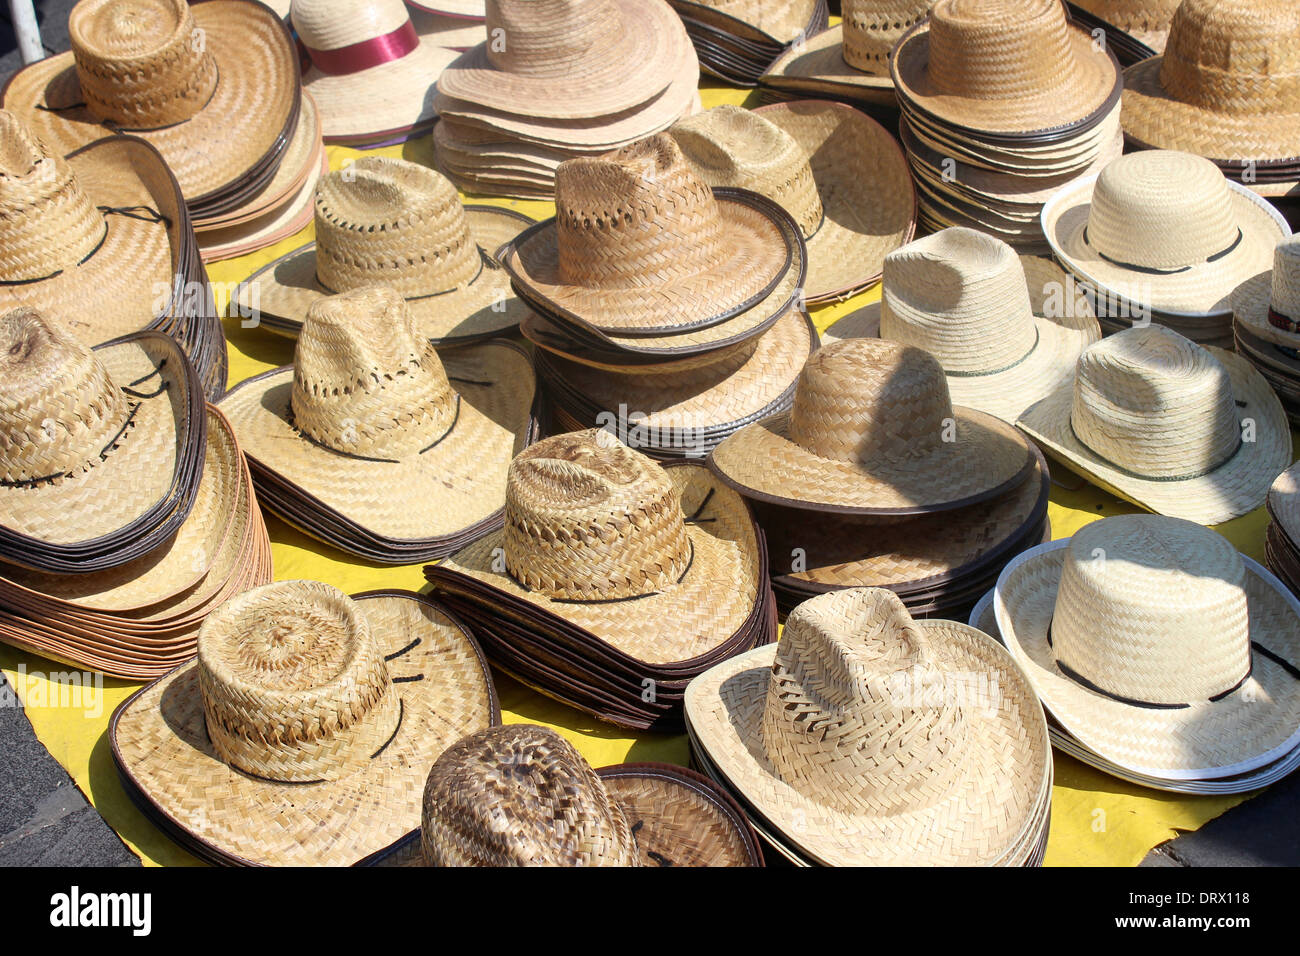 Straw hats, Mexico City, Mexico Stock Photo